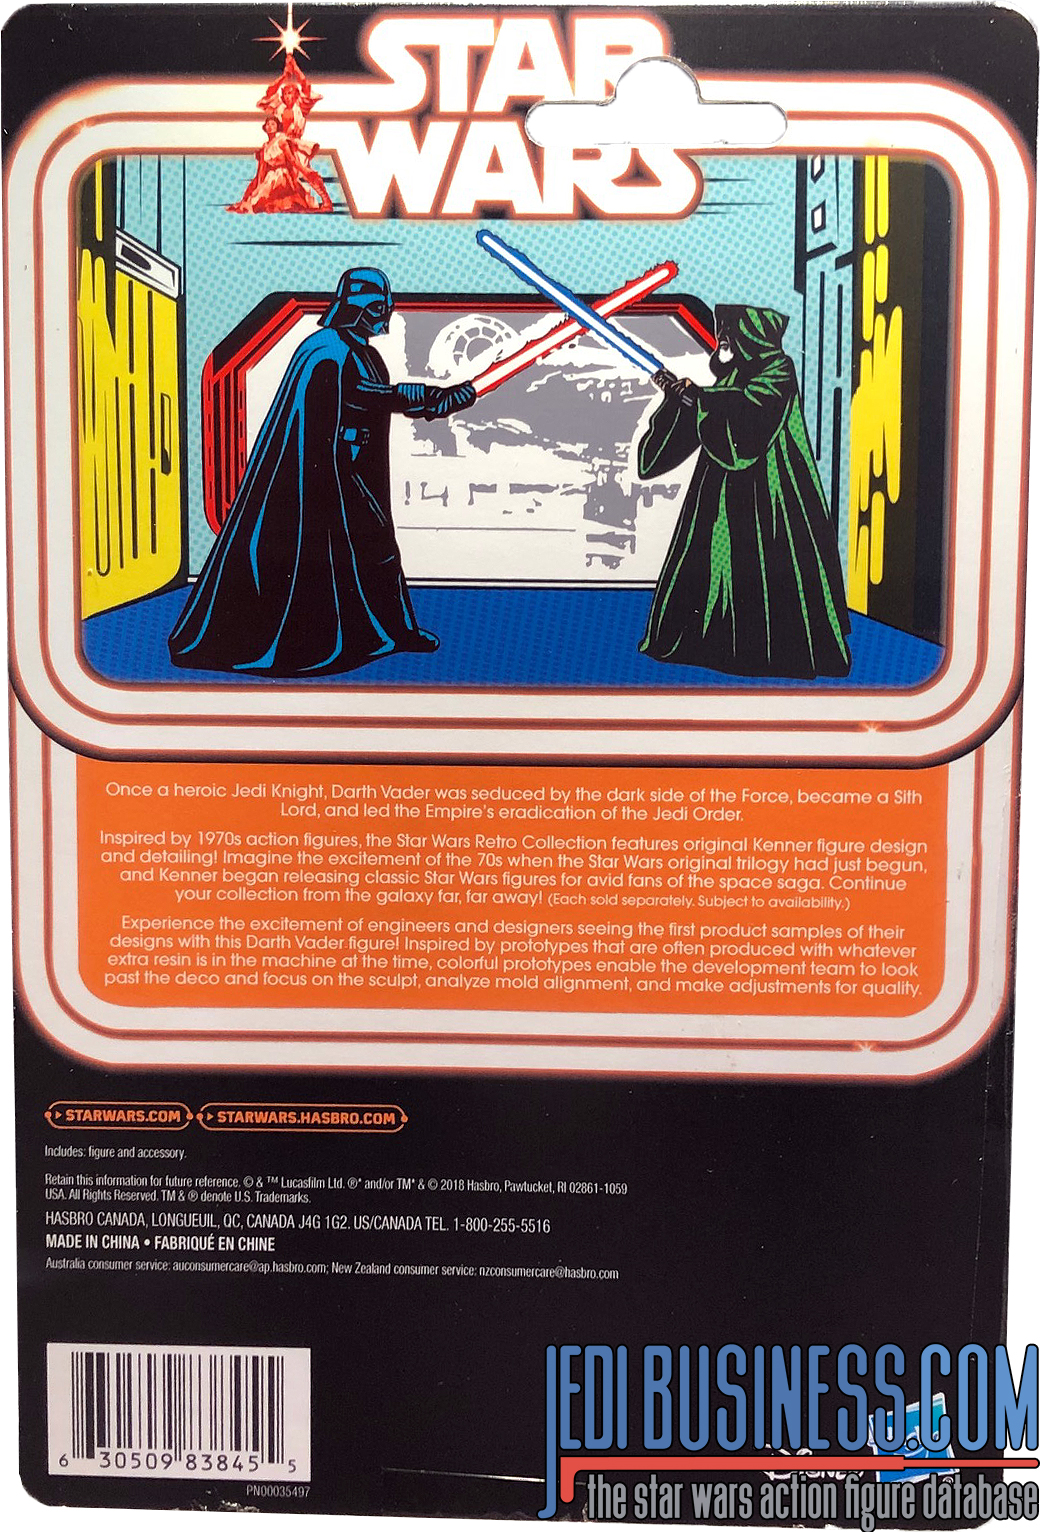 Star Wars Retro Collection Darth Vader Prototype